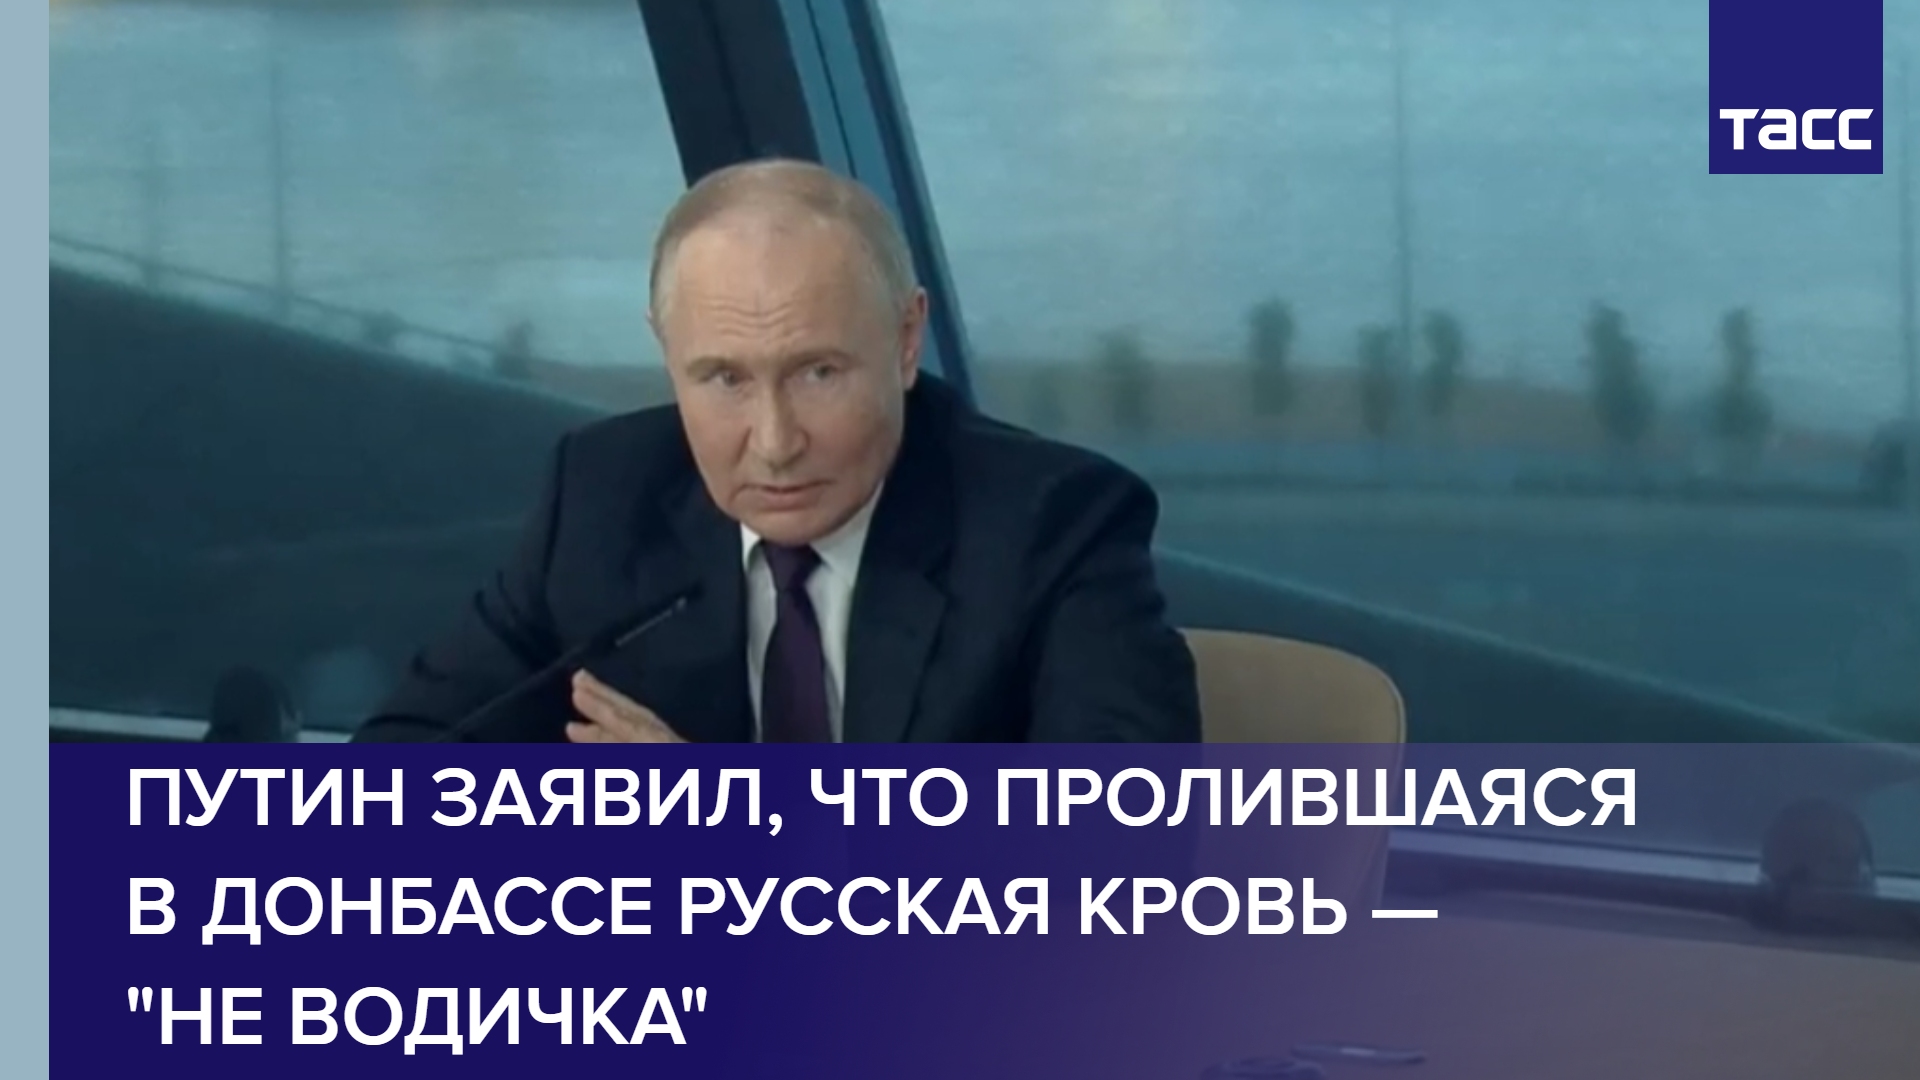 Путин заявил, что пролившаяся в Донбассе русская кровь — "не водичка"